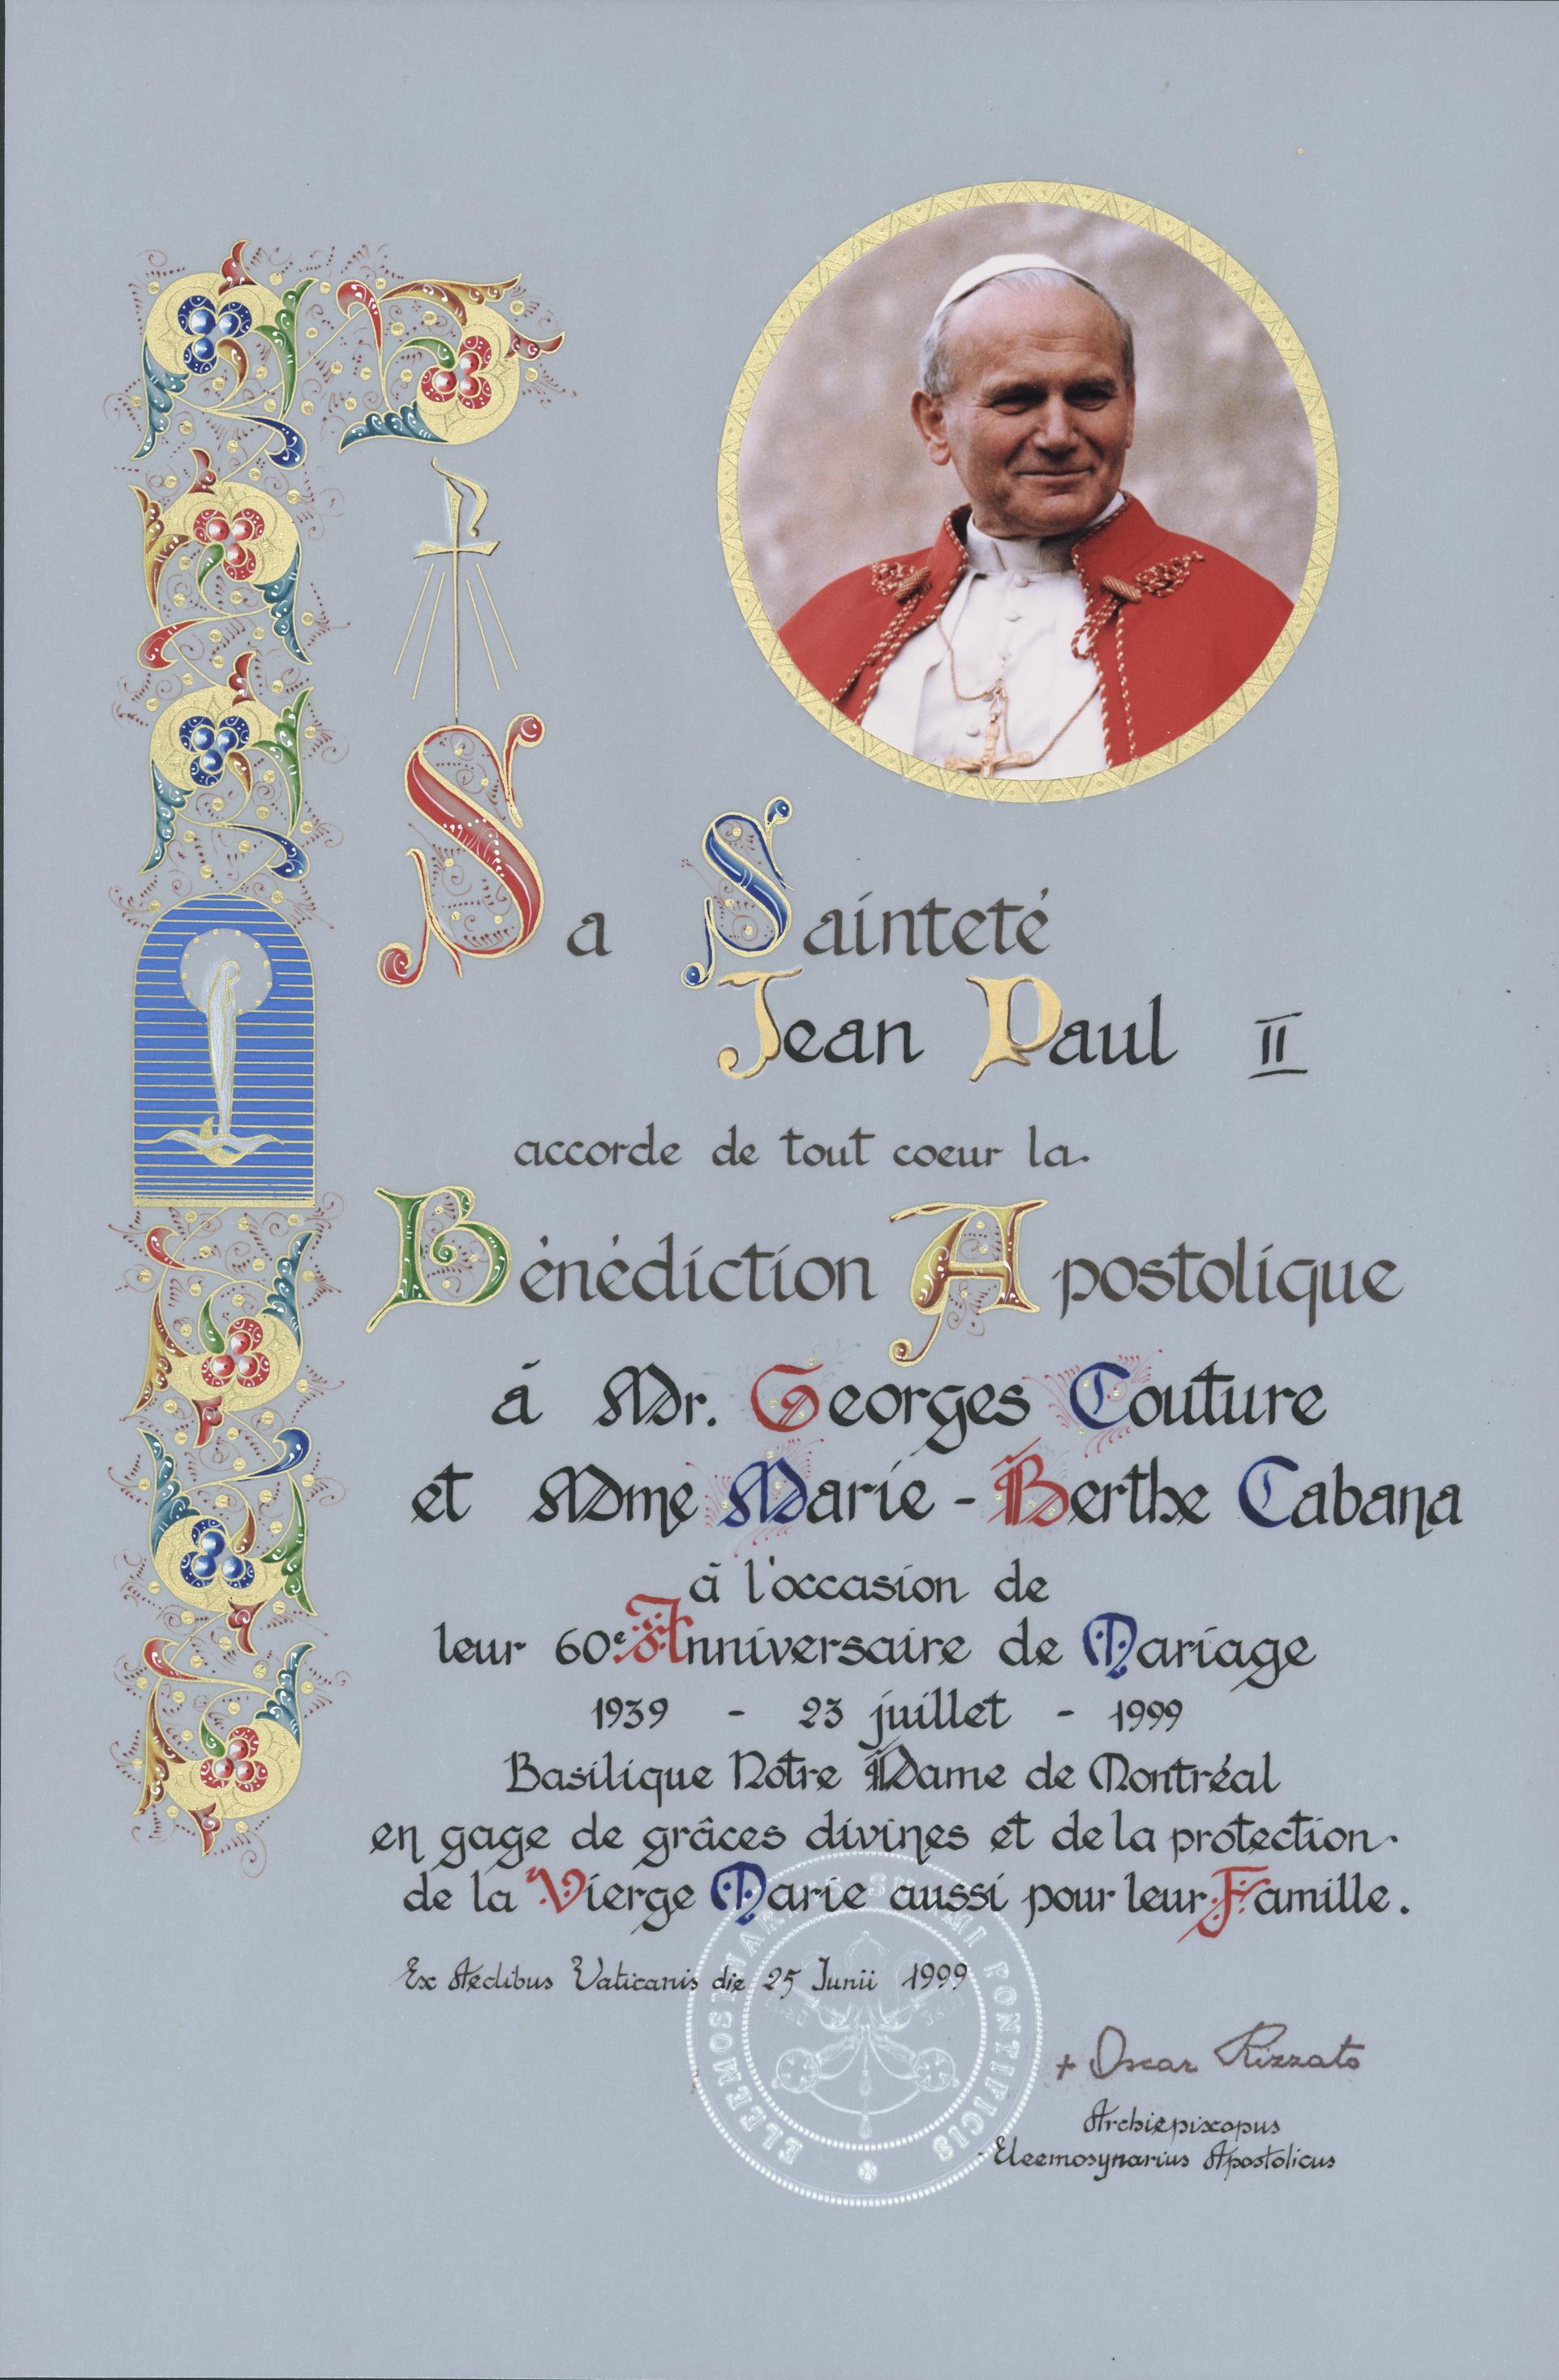 Bénédiction de Jean Paul II donnée au couple Couture pour leur commémorer le soixantième anniversaire de mariage jociste de 1939.